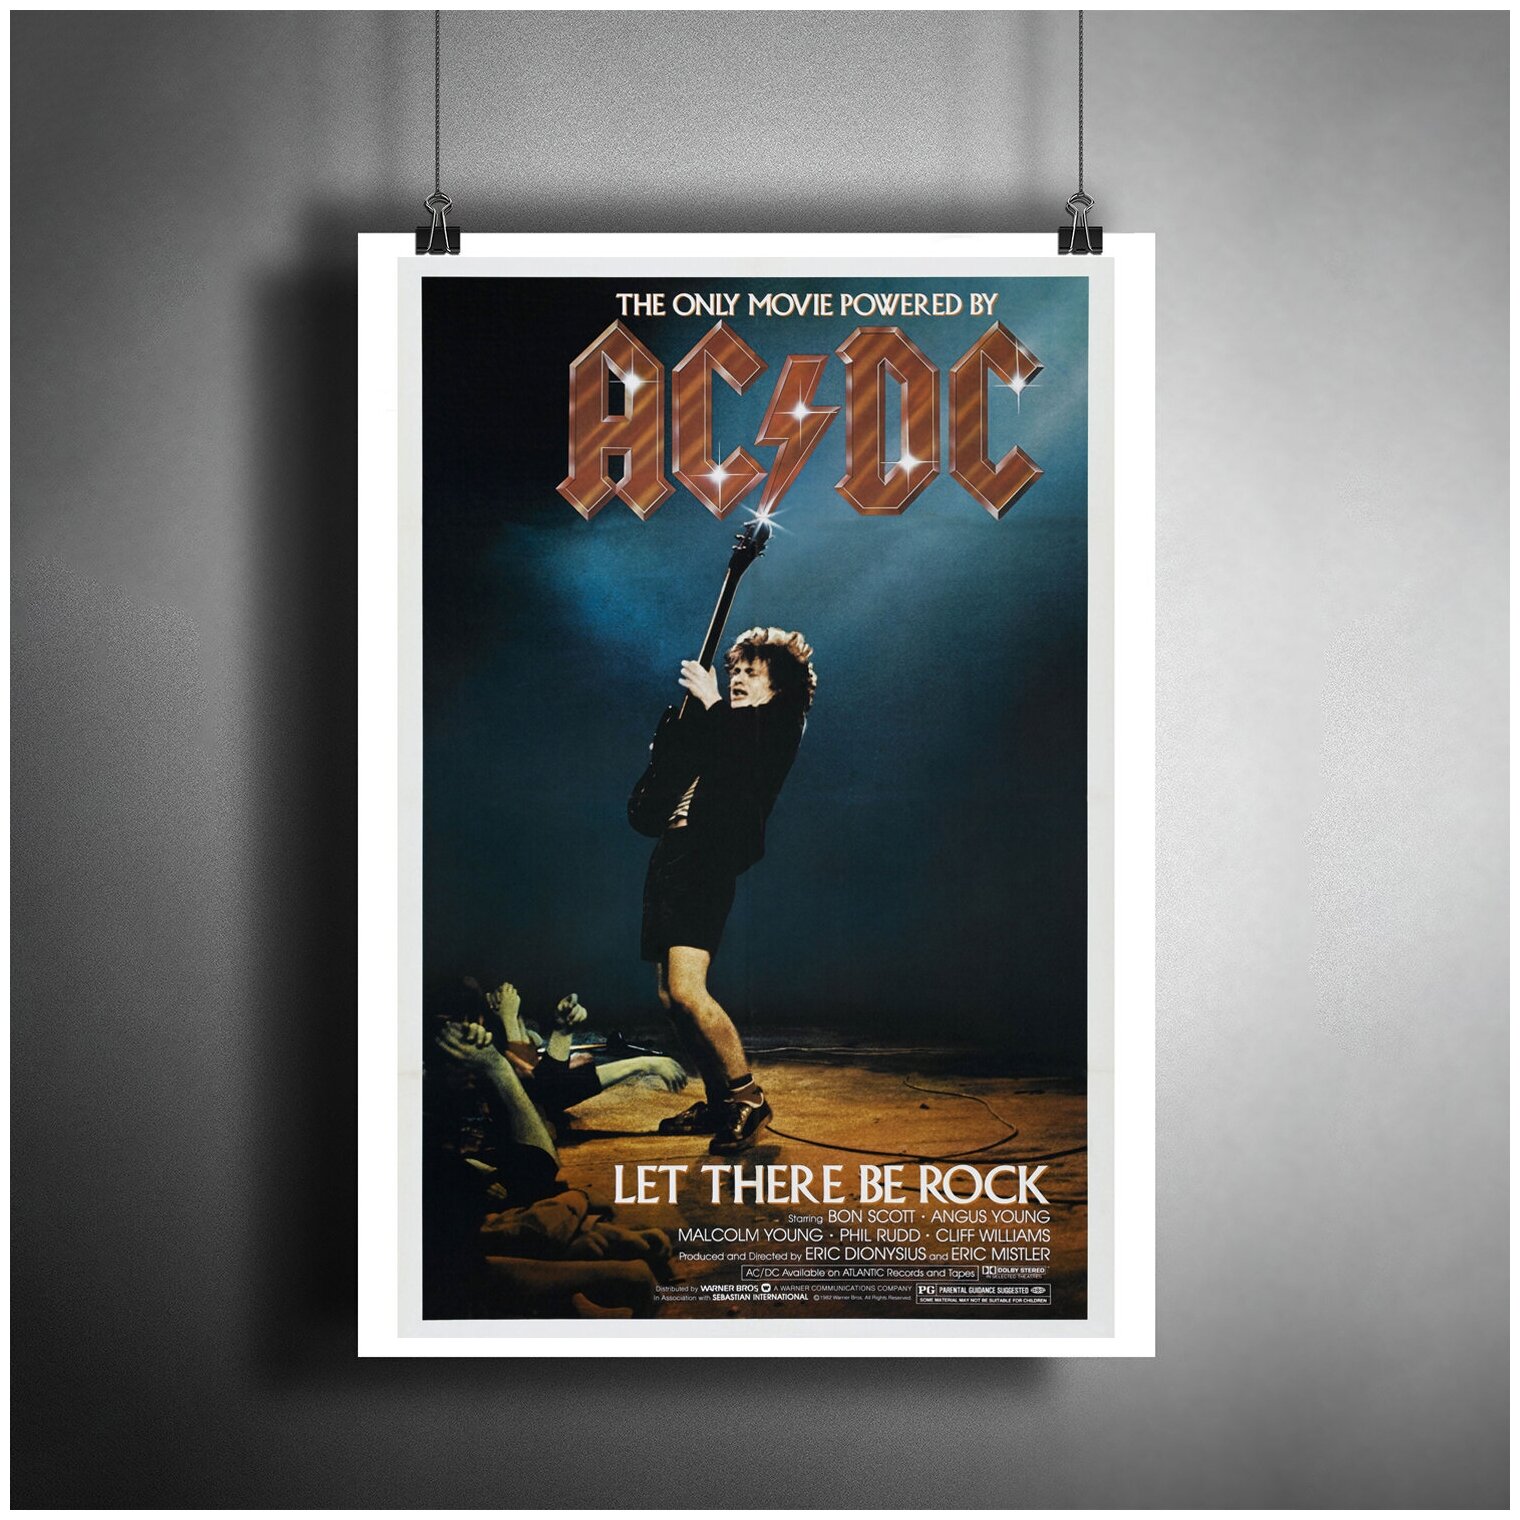 Постер плакат для интерьера "Музыка: Австралийская рок-группа AC/DC"/ Декор дома, офиса, комнаты A3 (297 x 420 мм)